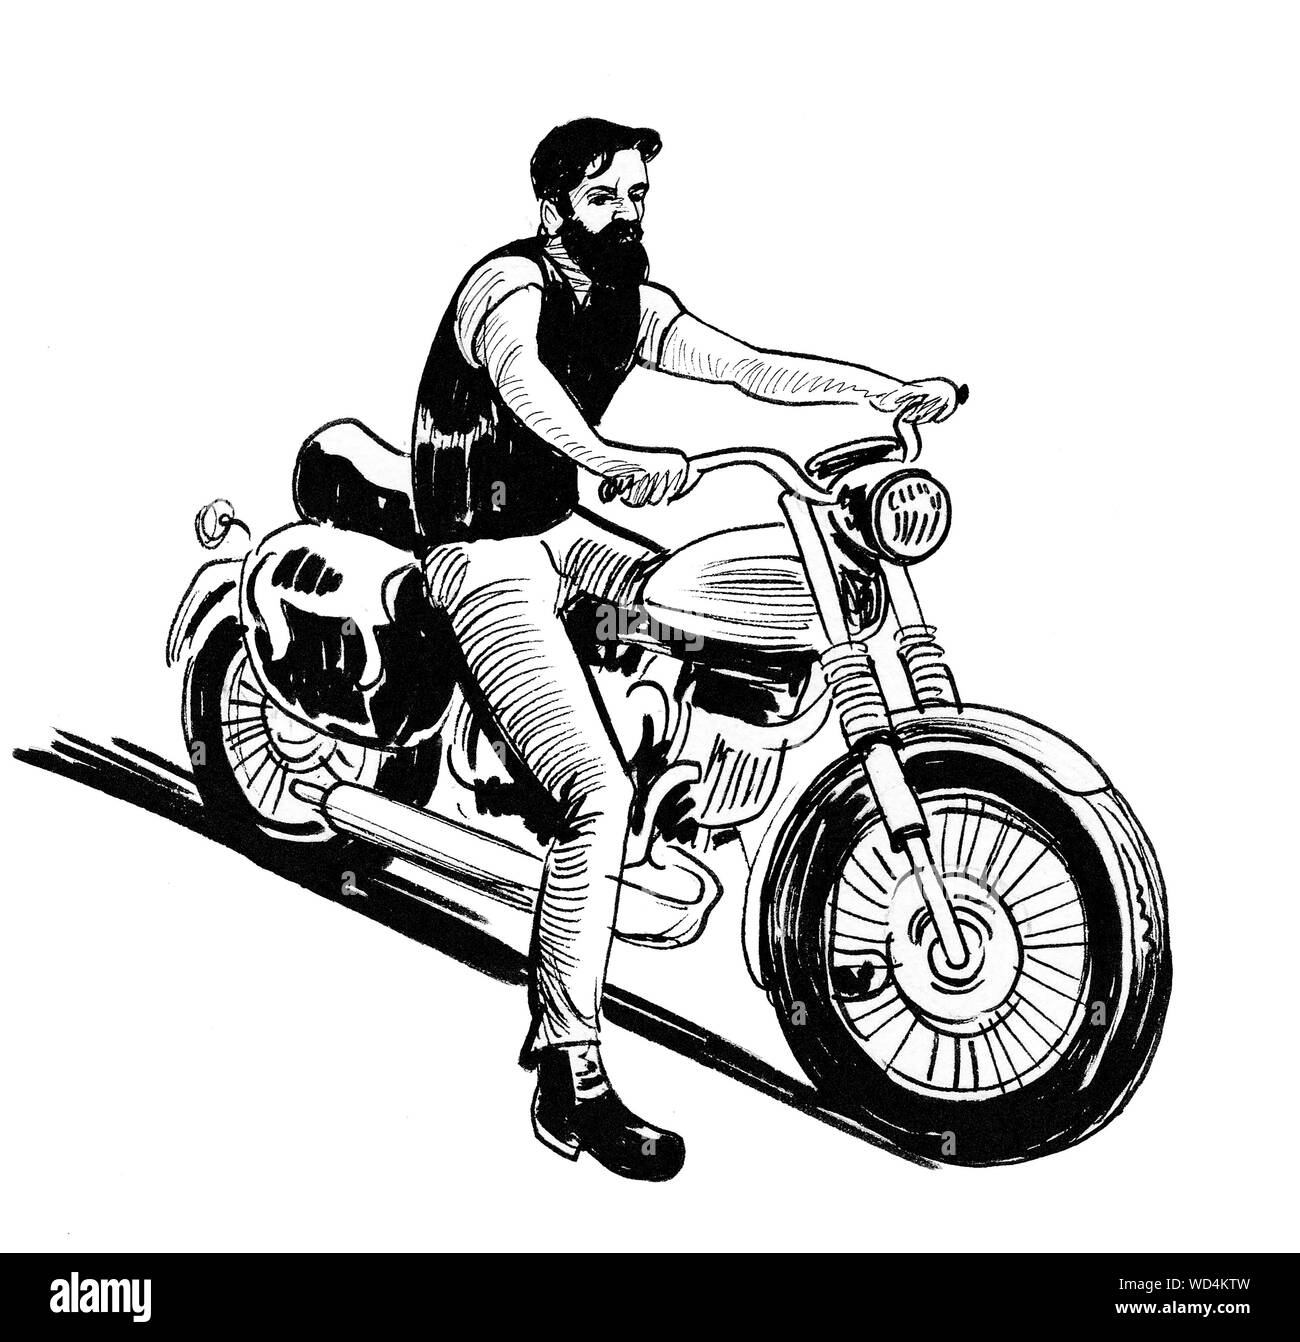 Biker zeichnung Schwarzweiß-Stockfotos und -bilder - Alamy